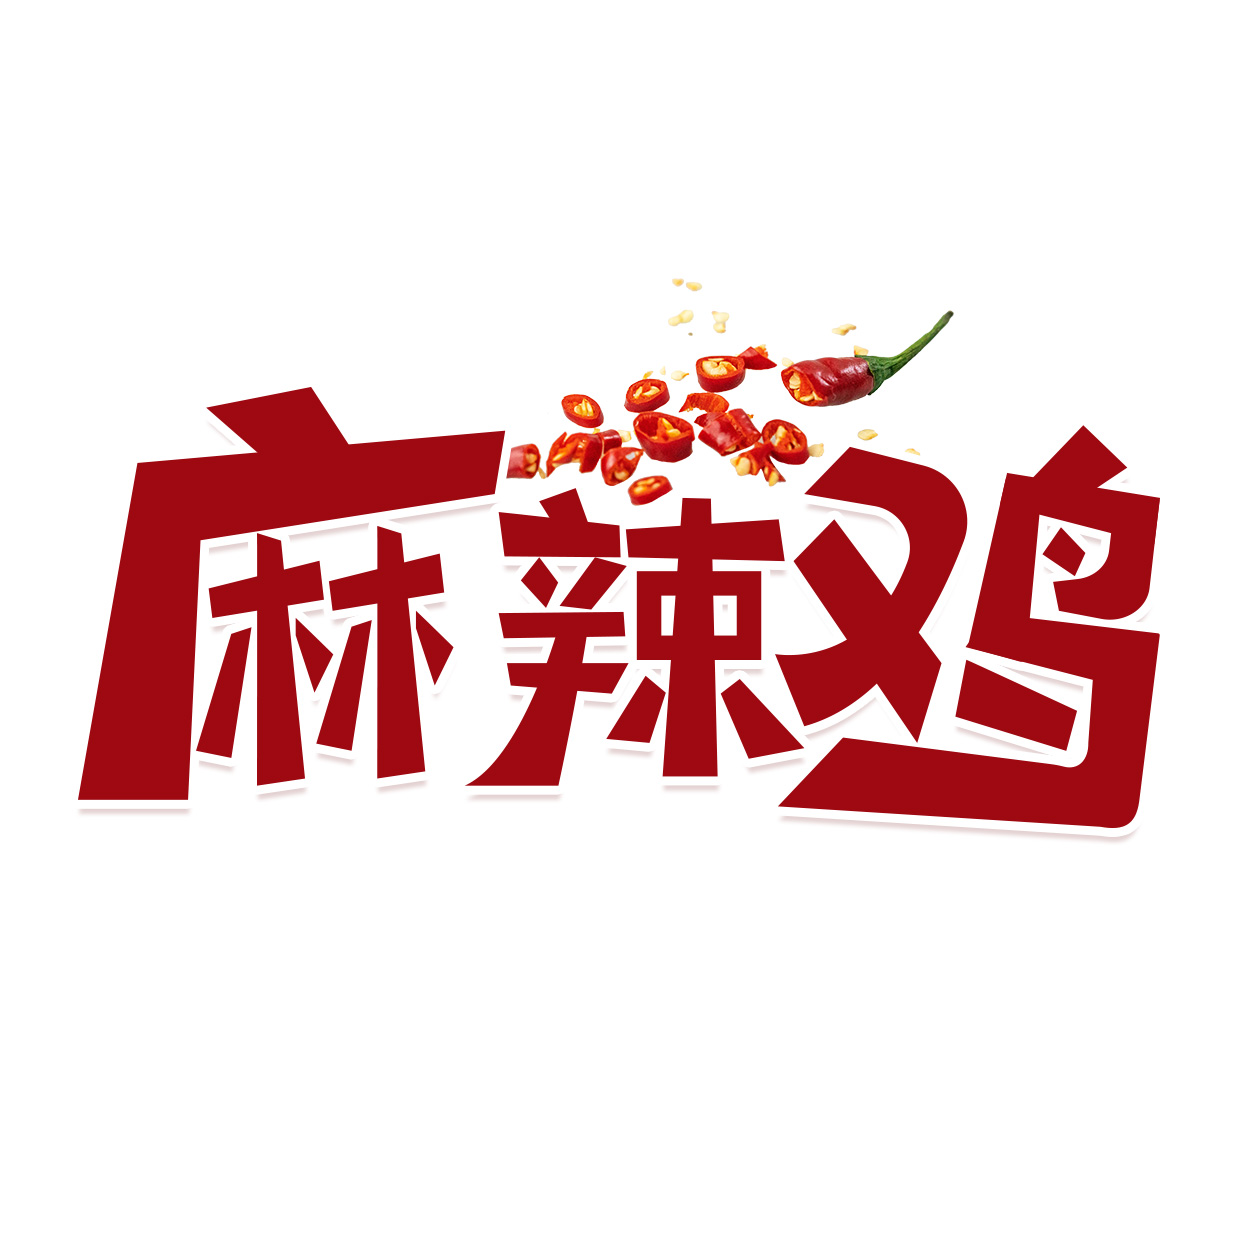 麻辣鸡字体设计麻辣鸡字体设计红色卡通LOGO图片